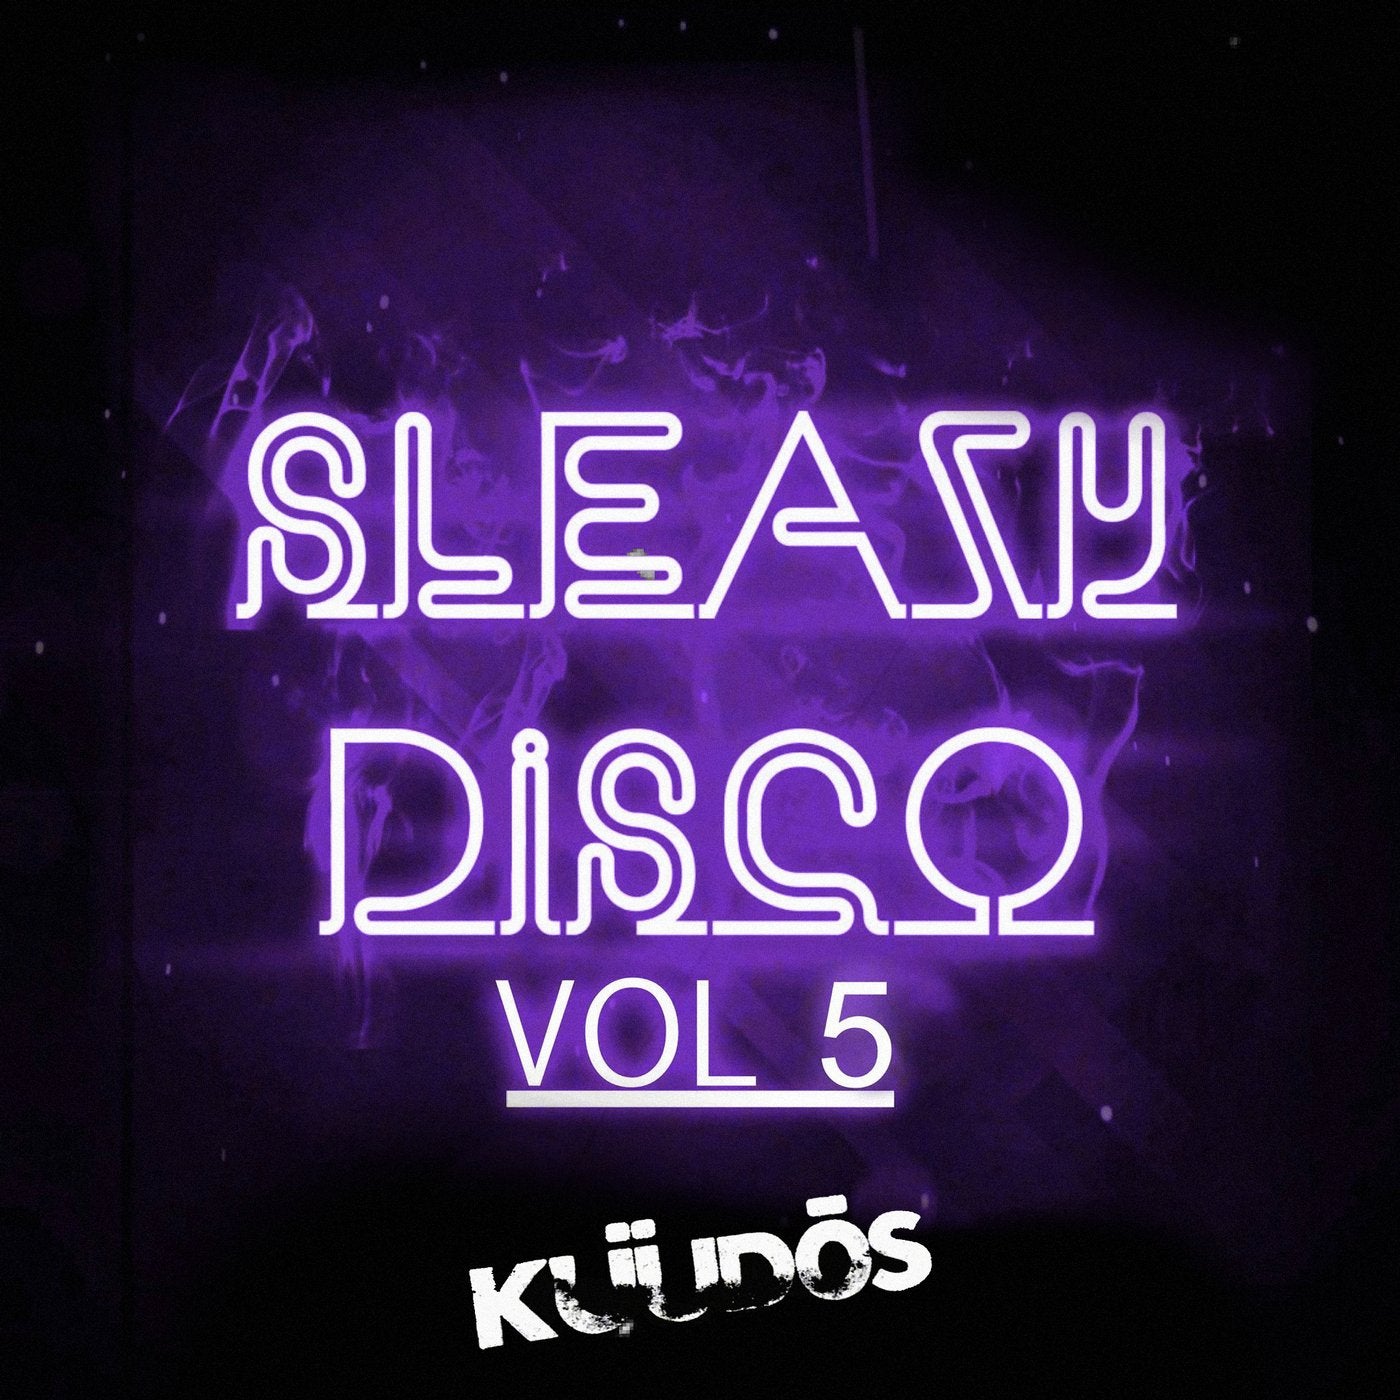 Sleazy Disco, Vol.5